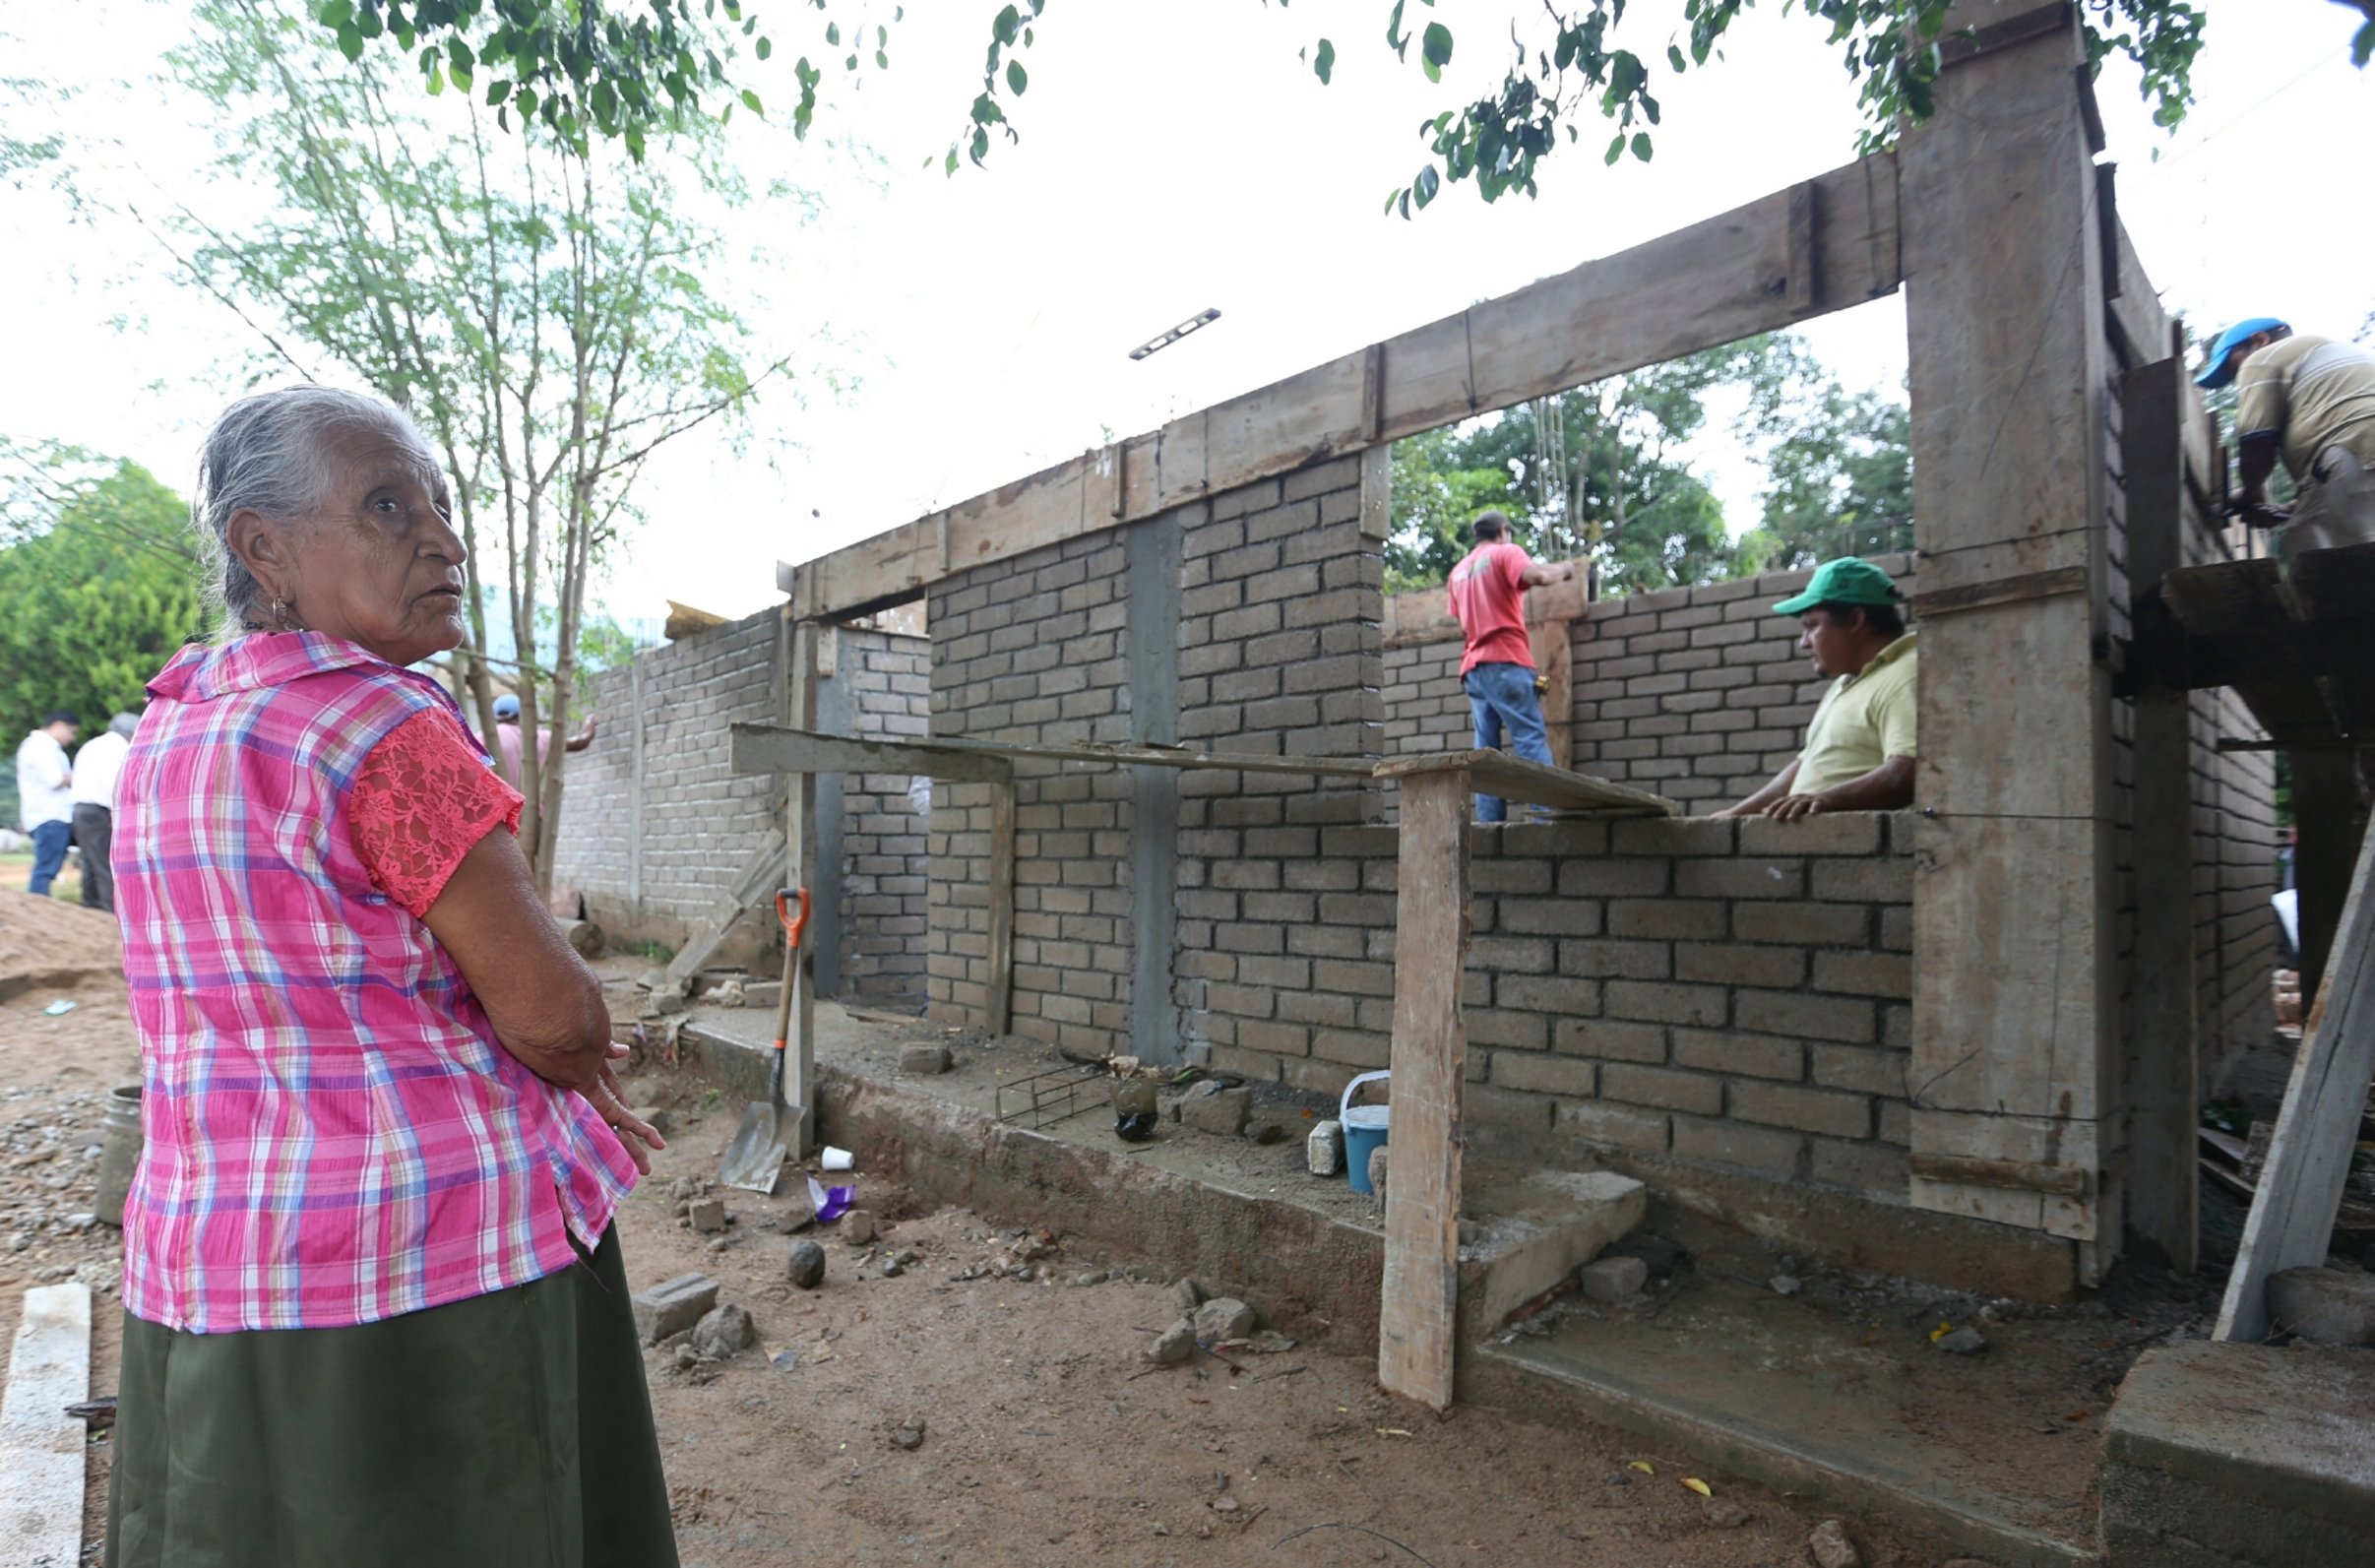 En noviembre podría concluir demolición de viviendas dañadas en Chiapas